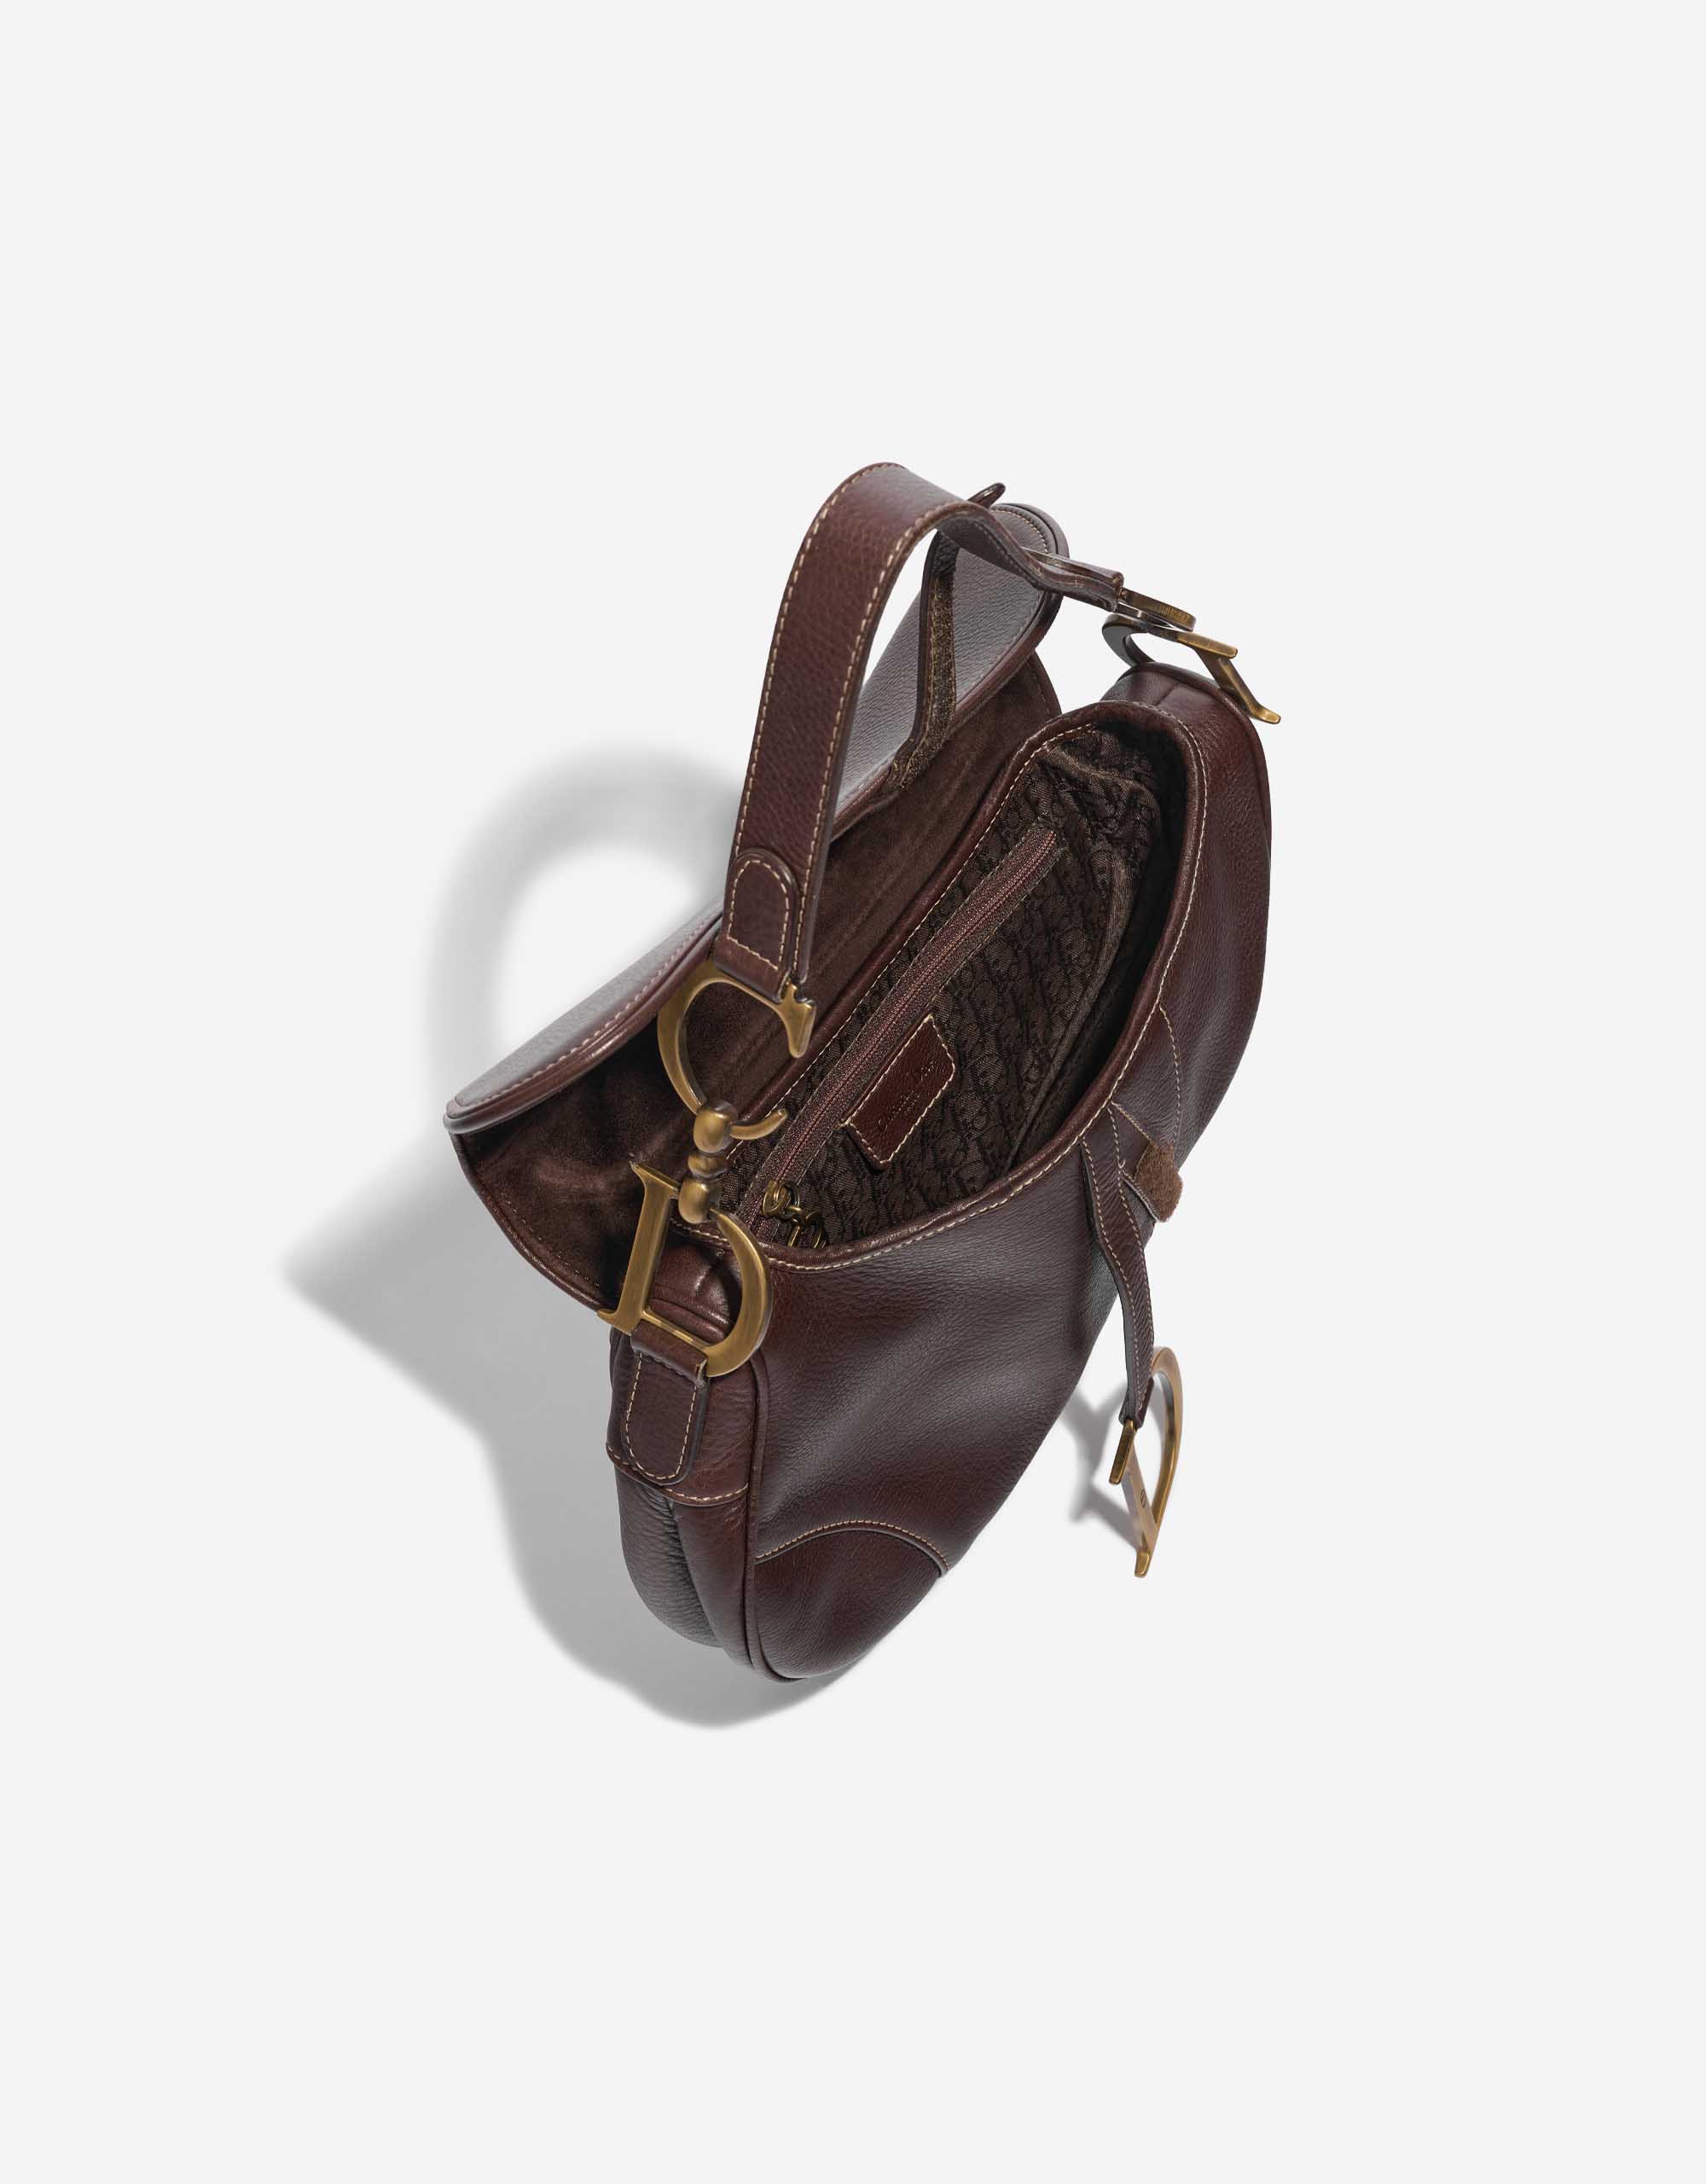 Sac Dior d'occasion Saddle Medium Calf Brown Brown Inside | Vendez votre sac de créateur sur Saclab.com